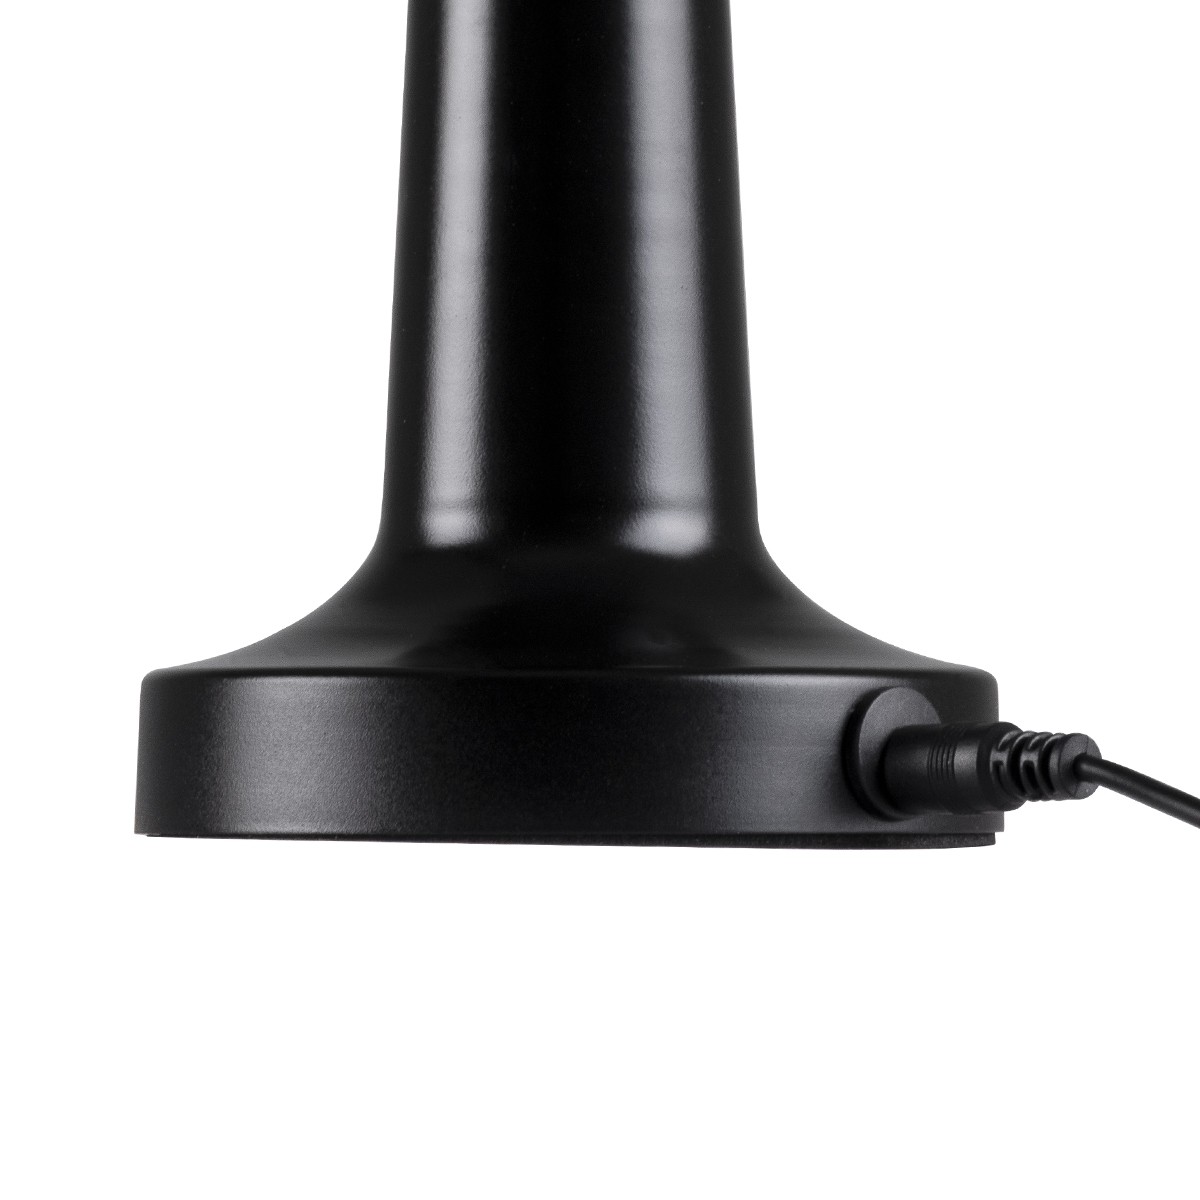 LED Επιτραπέζιο Φωτιστικό Μαύρο 1.5W COCO Επαναφορτιζόμενο με Μπαταρία και Διακόπτη Αφής Dimmable - Φ10 x 22cm